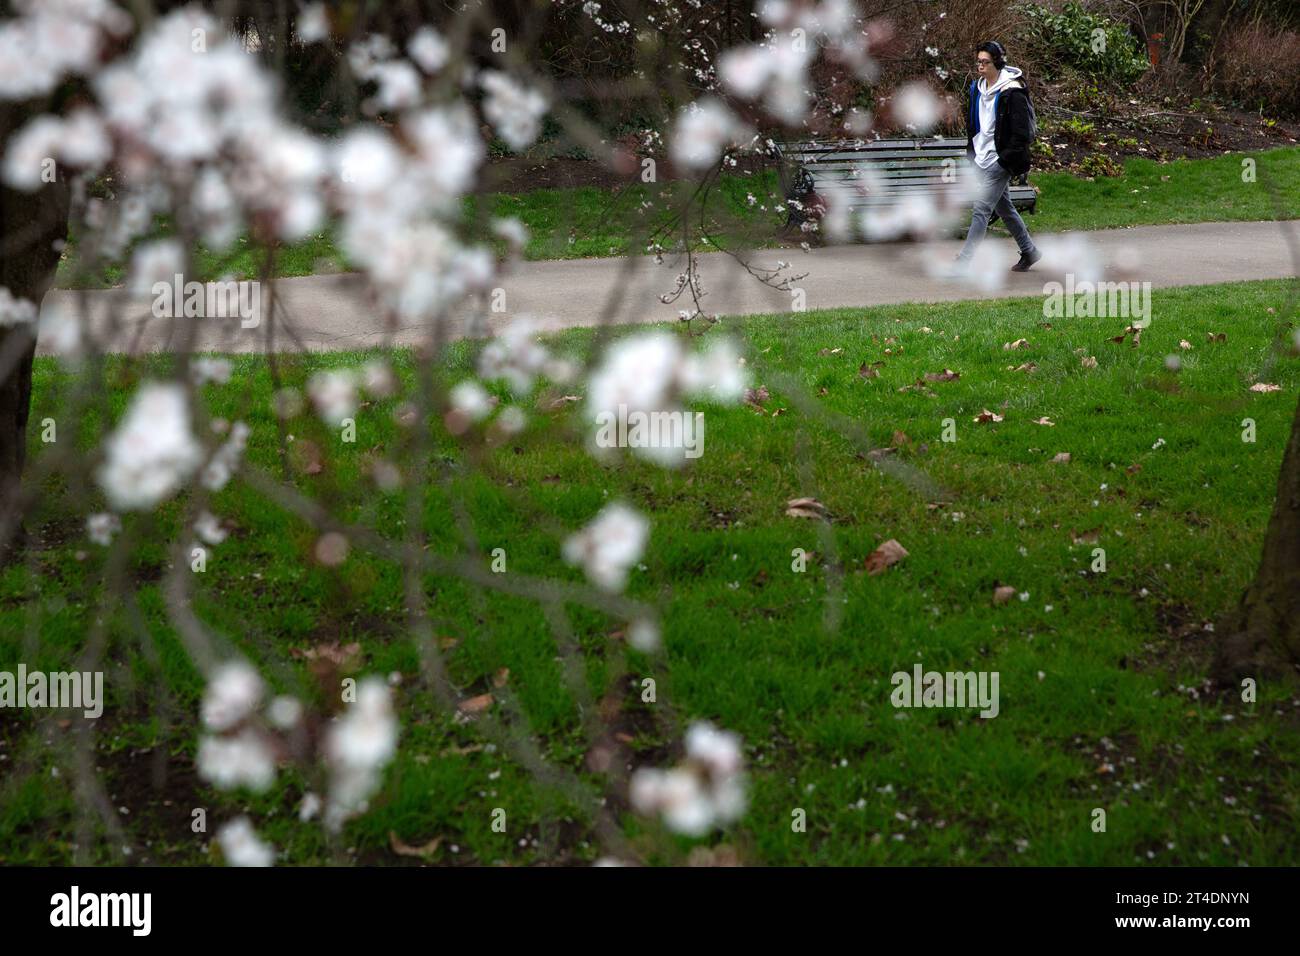 Blumen blühen, während die Menschen ihre Zeit im Regent’s Park in London verbringen. Stockfoto